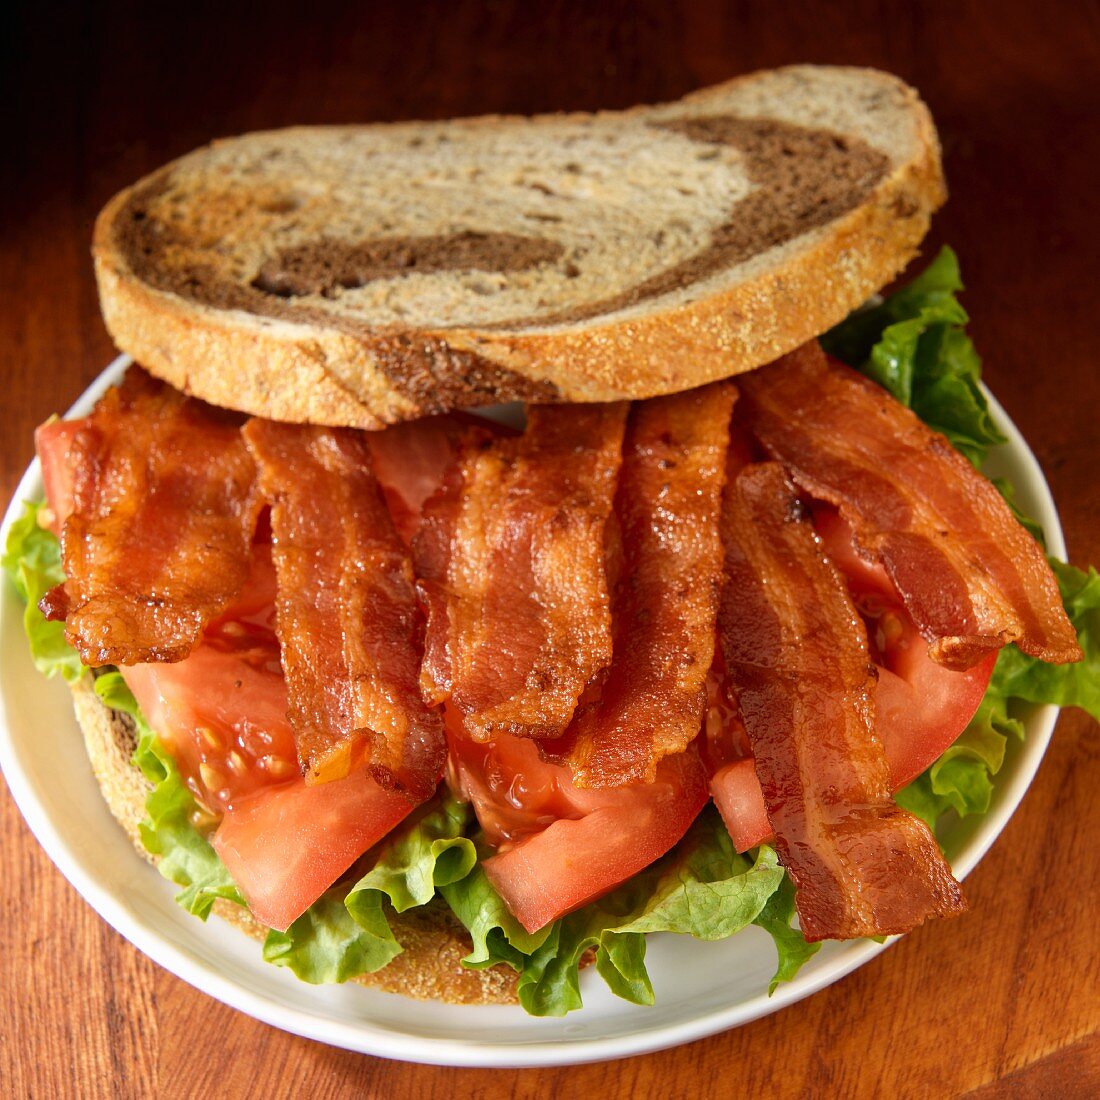 Roggenbrot-Sandwich mit Bacon, Tomaten und Salat